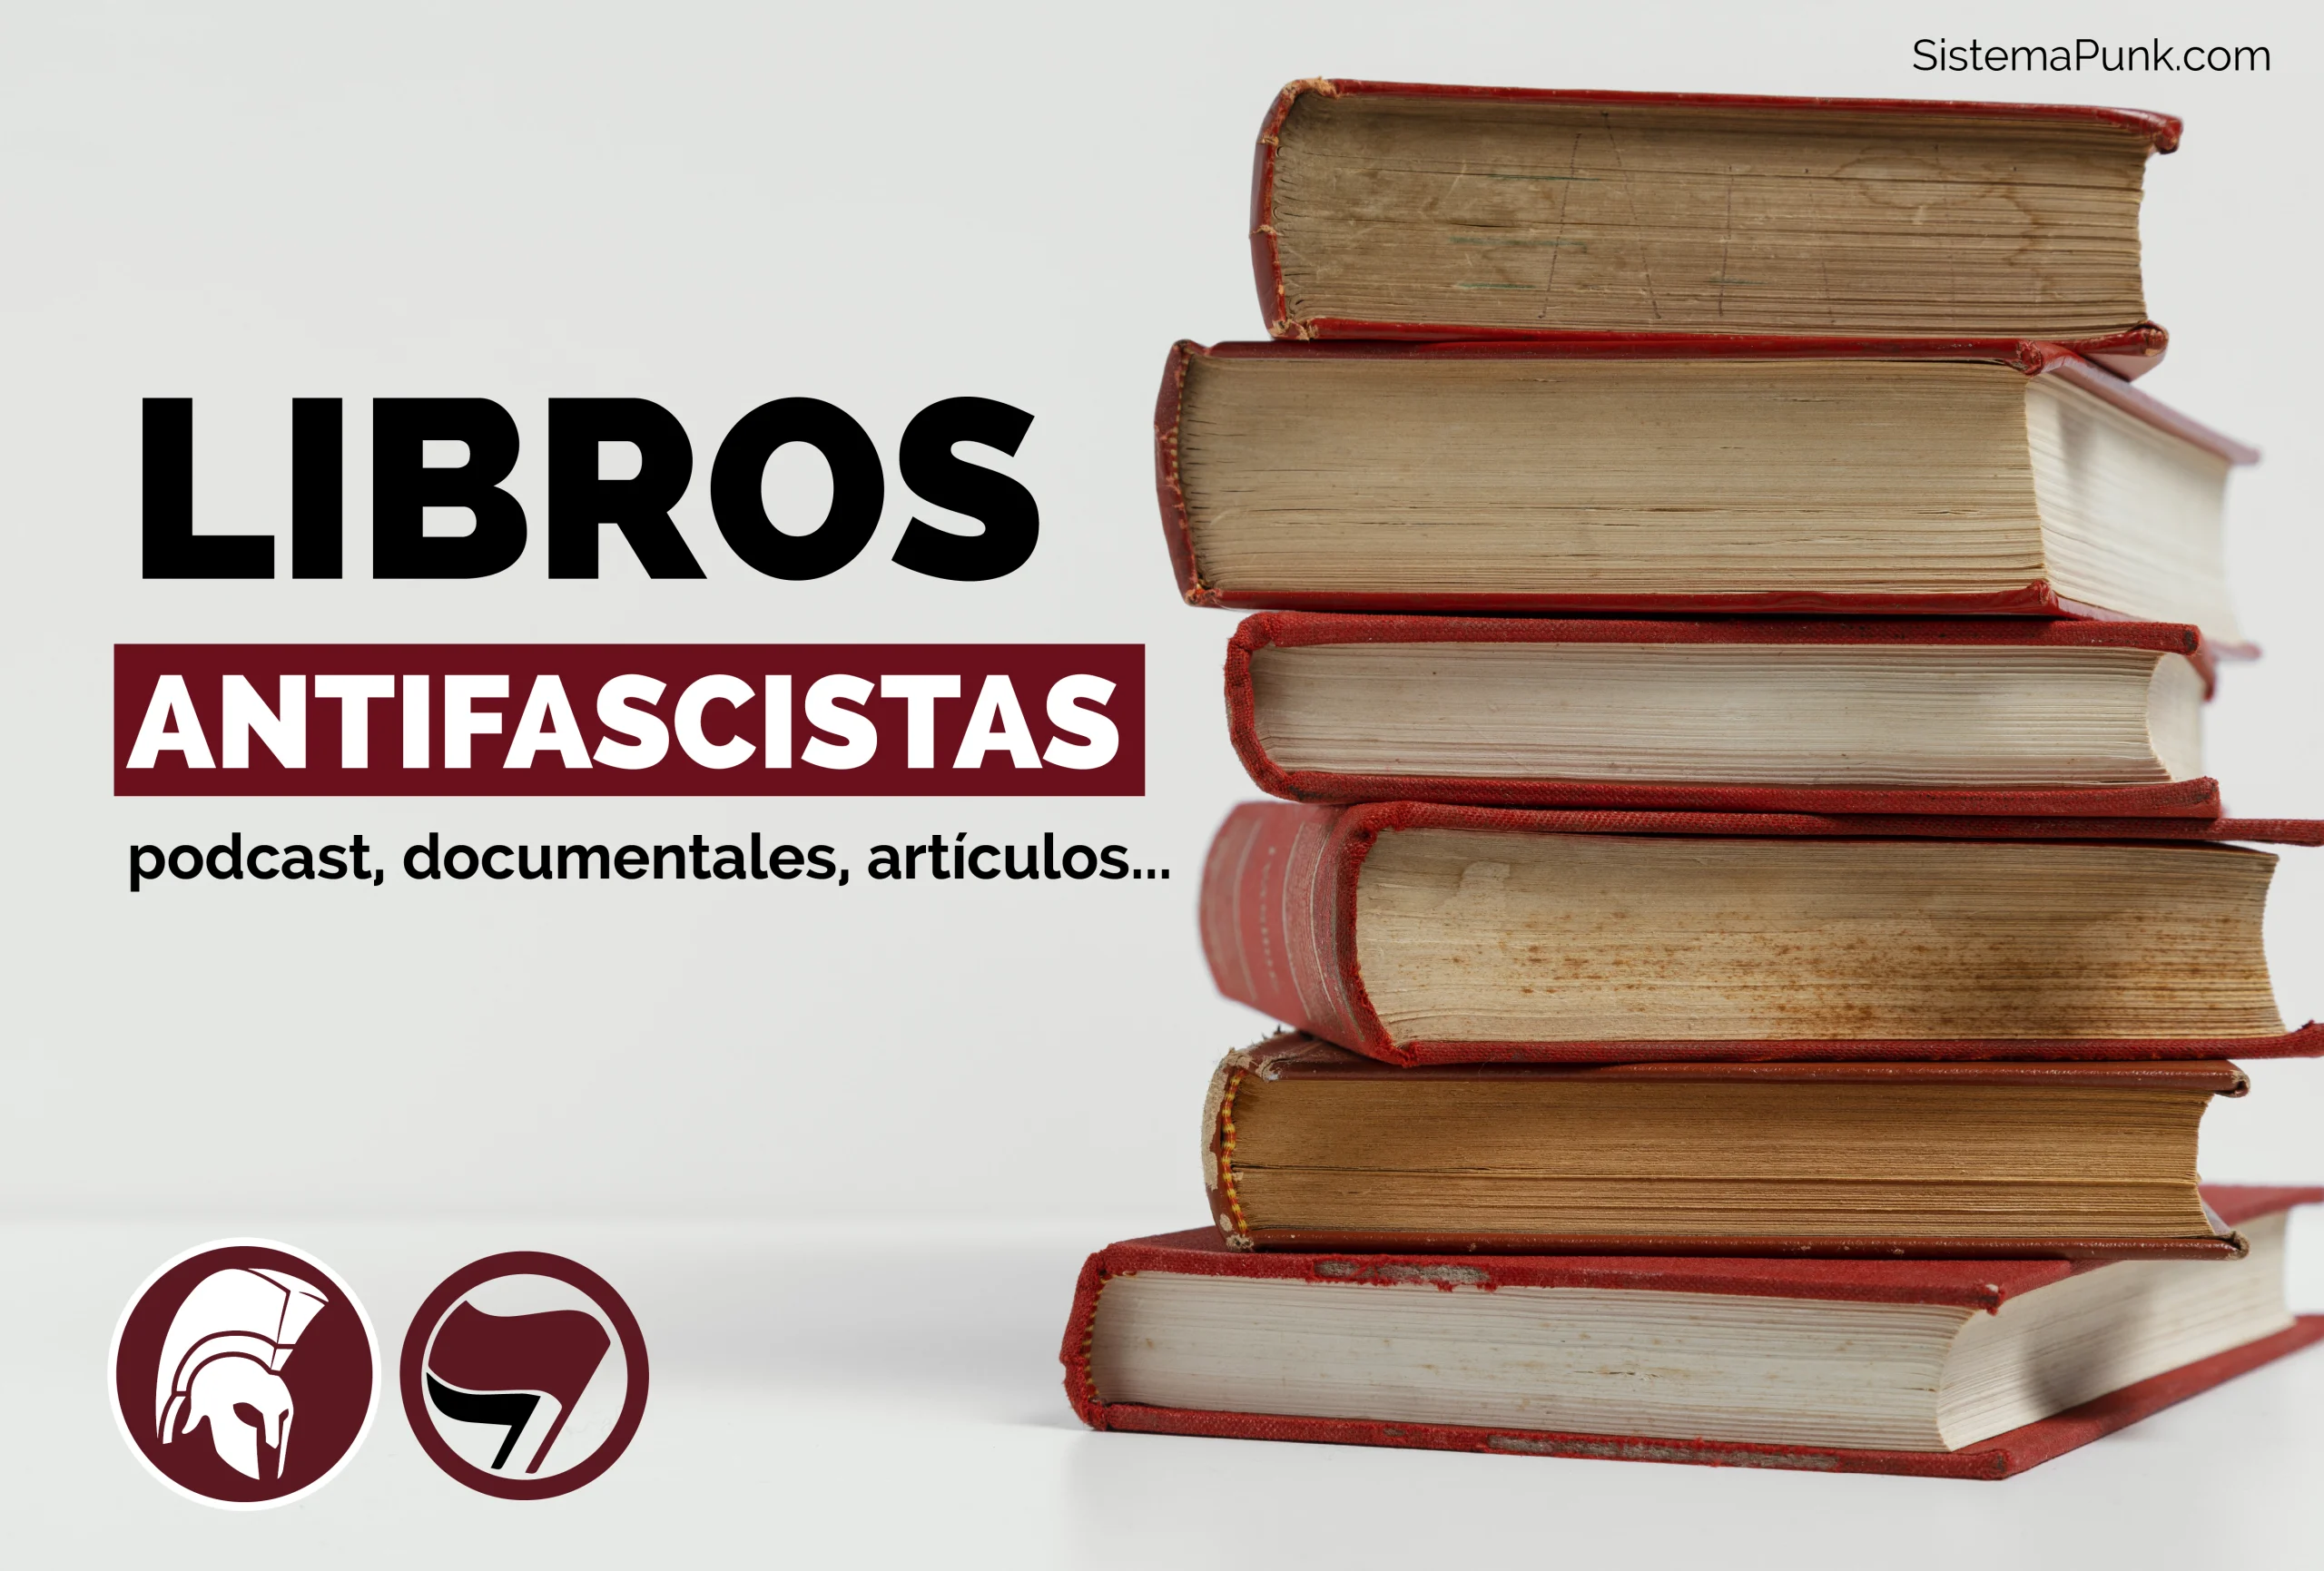 Libros antifascistas. Podcast, artículos, documentales... Imagen de fondo de Freepik.